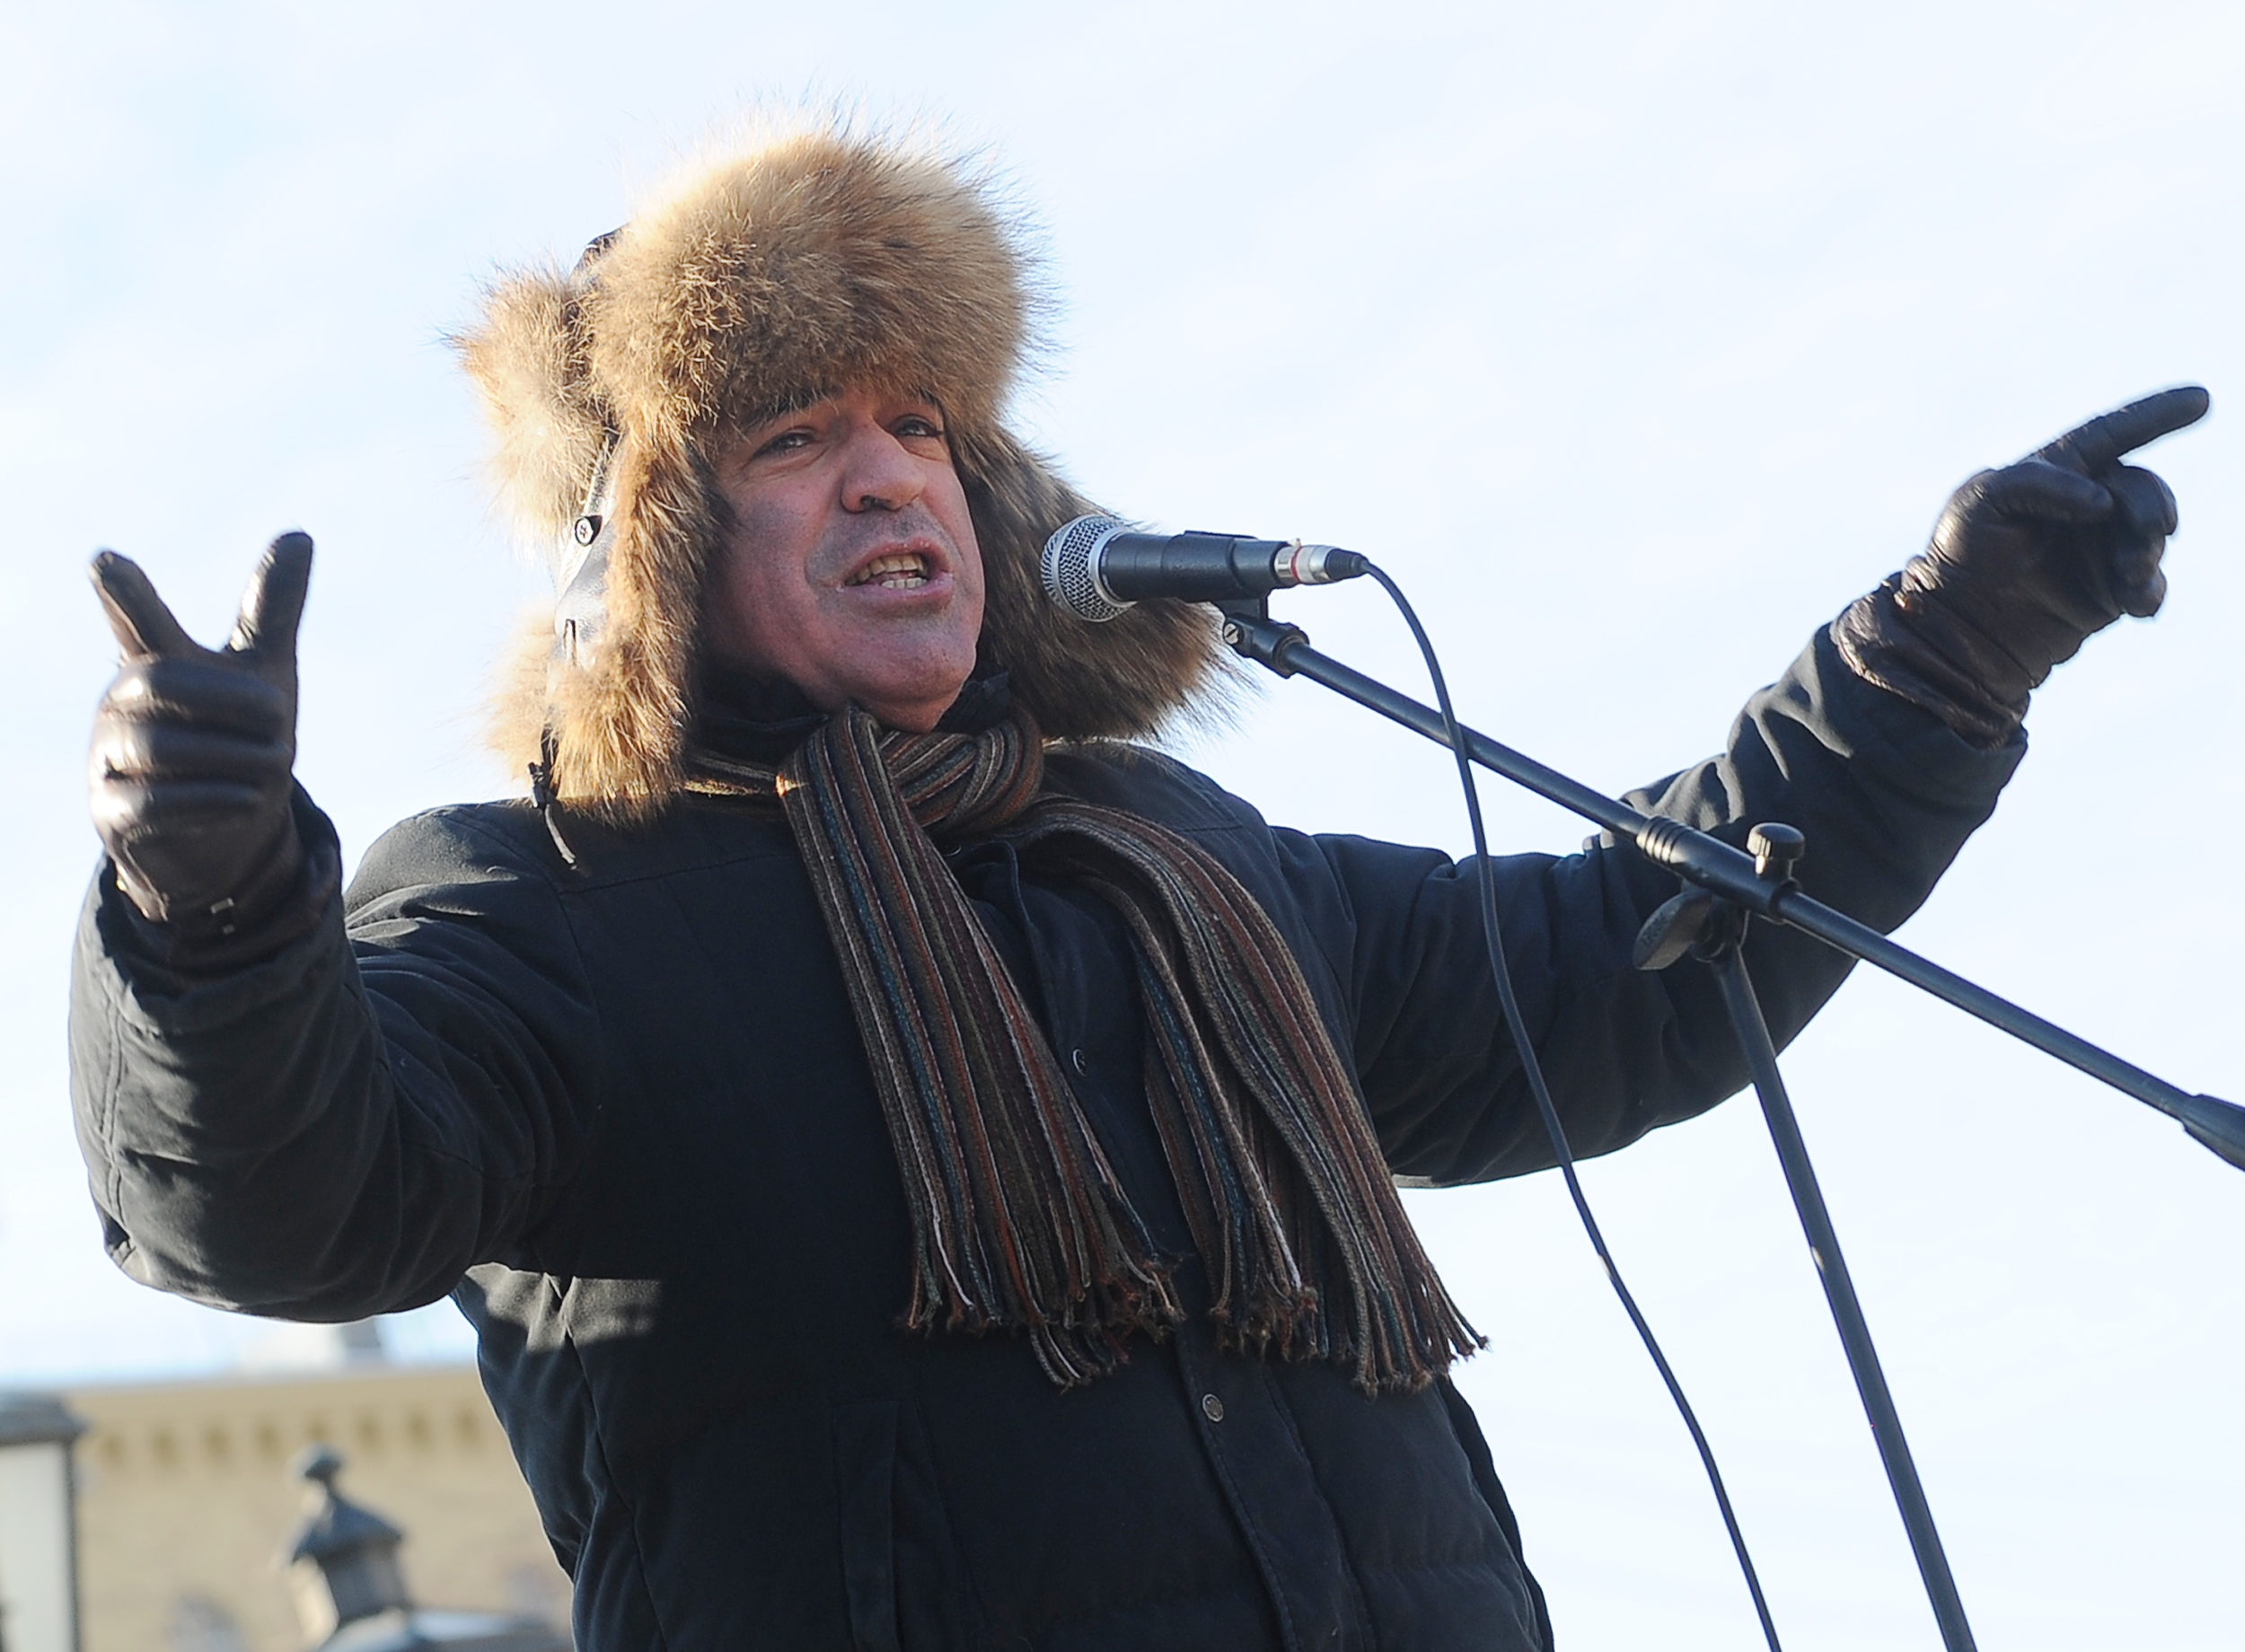 Екс-чемпіон світу з шахів і один із лідерів опозиції в Росії Гаррі Каспаров виголошує промову під час мітингу протесту проти Путіна в Москві, 19 лютого 2011 року. Фото: NATALIA KOLESNIKOVA/AFP/Getty Images